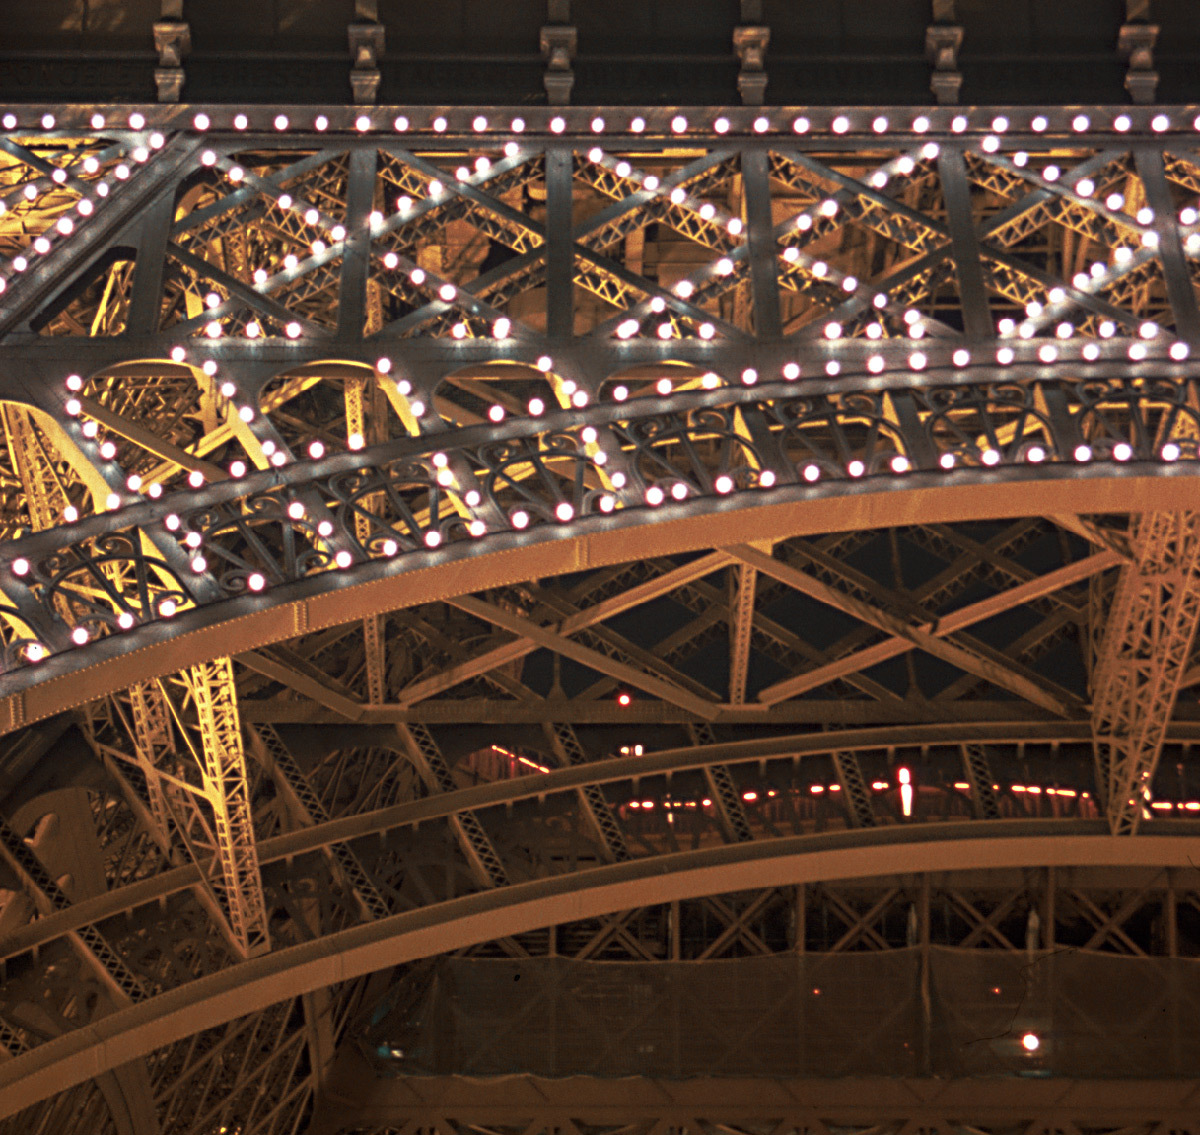 Illuminations, scintillement, éclairage, phare - La Tour Eiffel